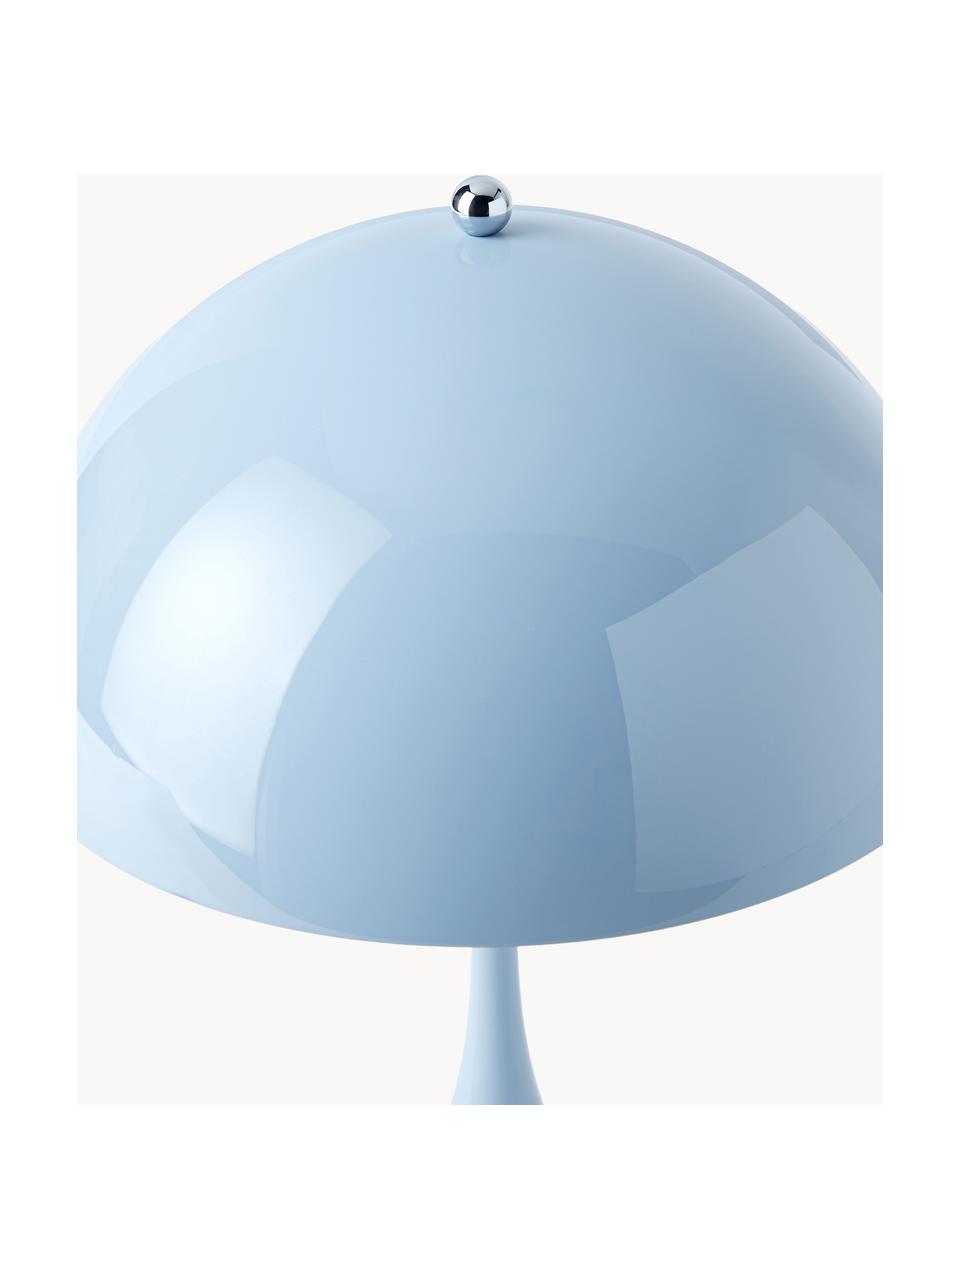 Lampa stołowa LED z funkcją przyciemniania Panthella, W 34 cm, Stelaż: aluminium powlekane, Jasnoniebieska stal, Ø 25 x 34 cm